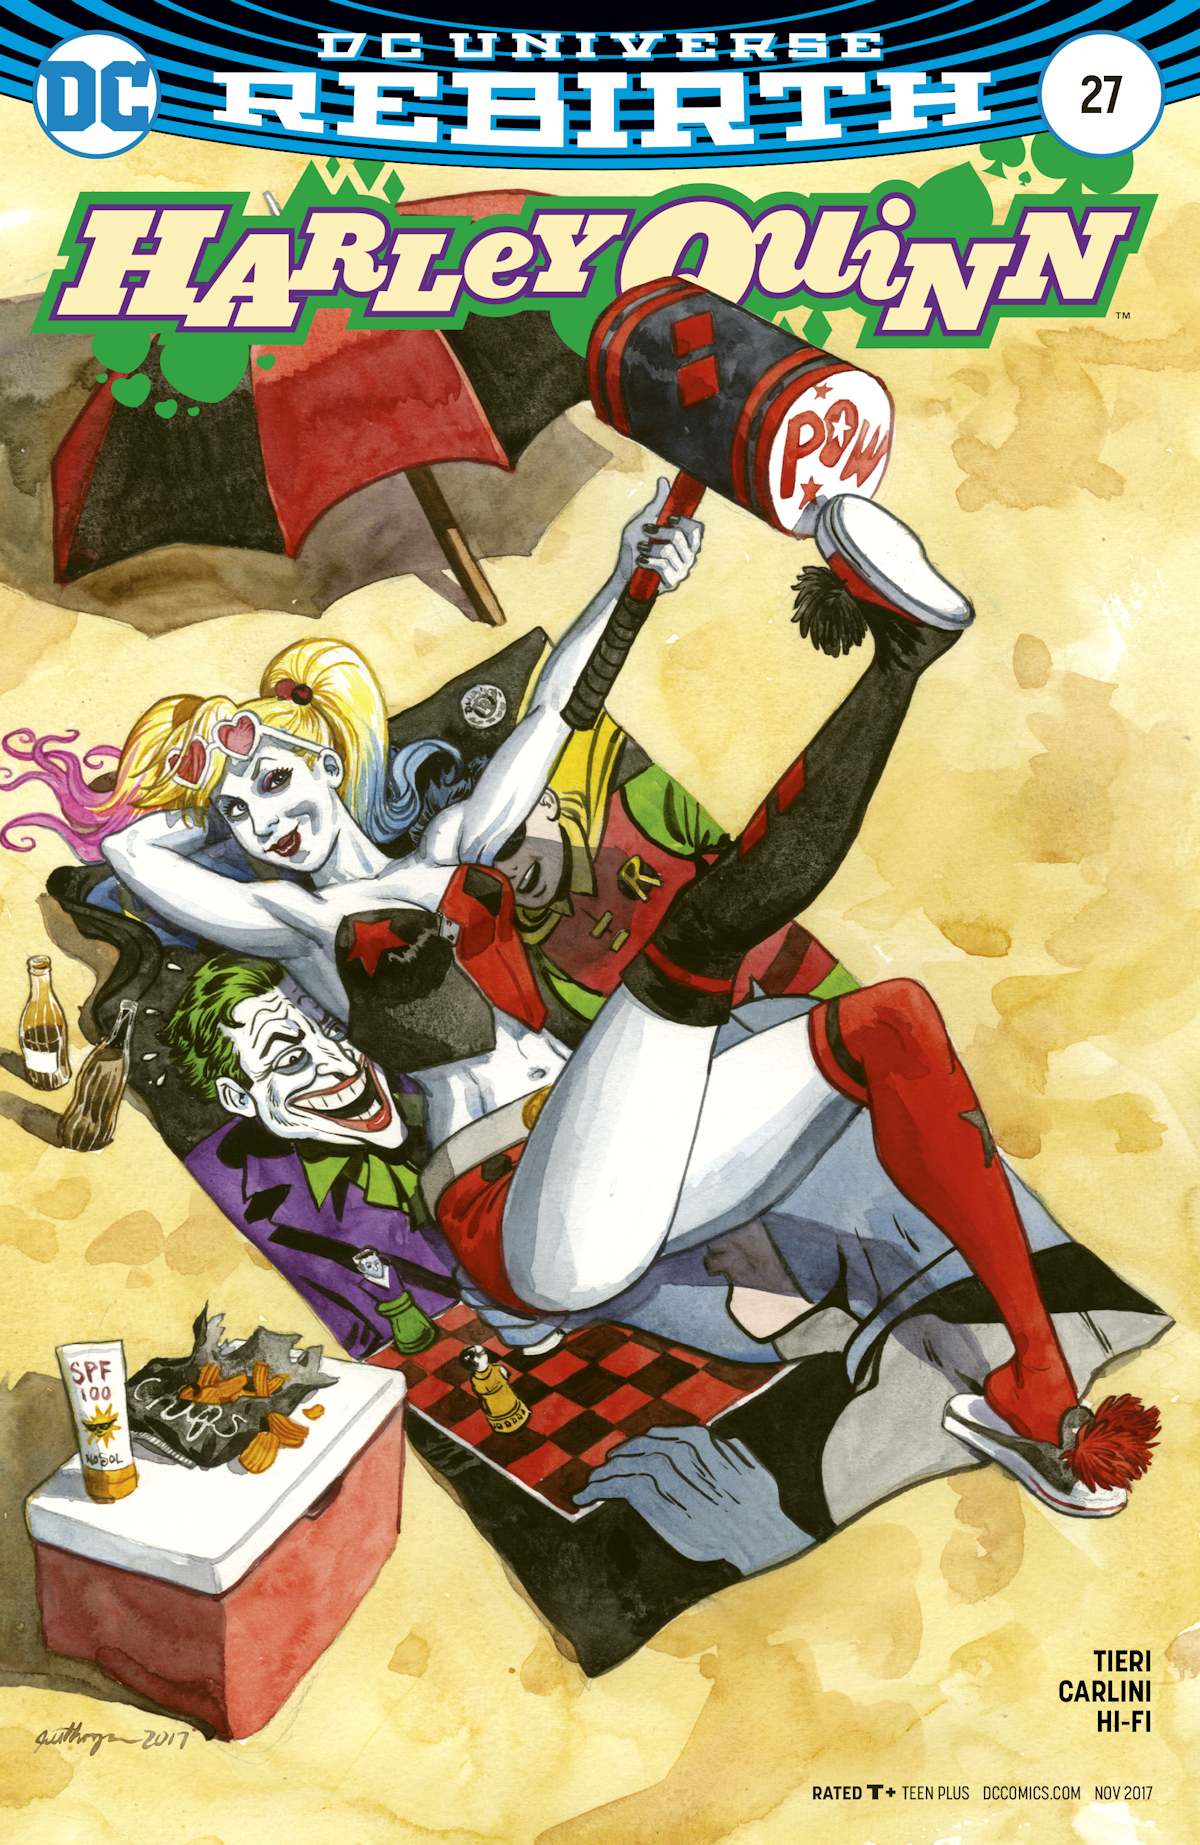 Harley Quinn Vol. 3 27 (Cover A)